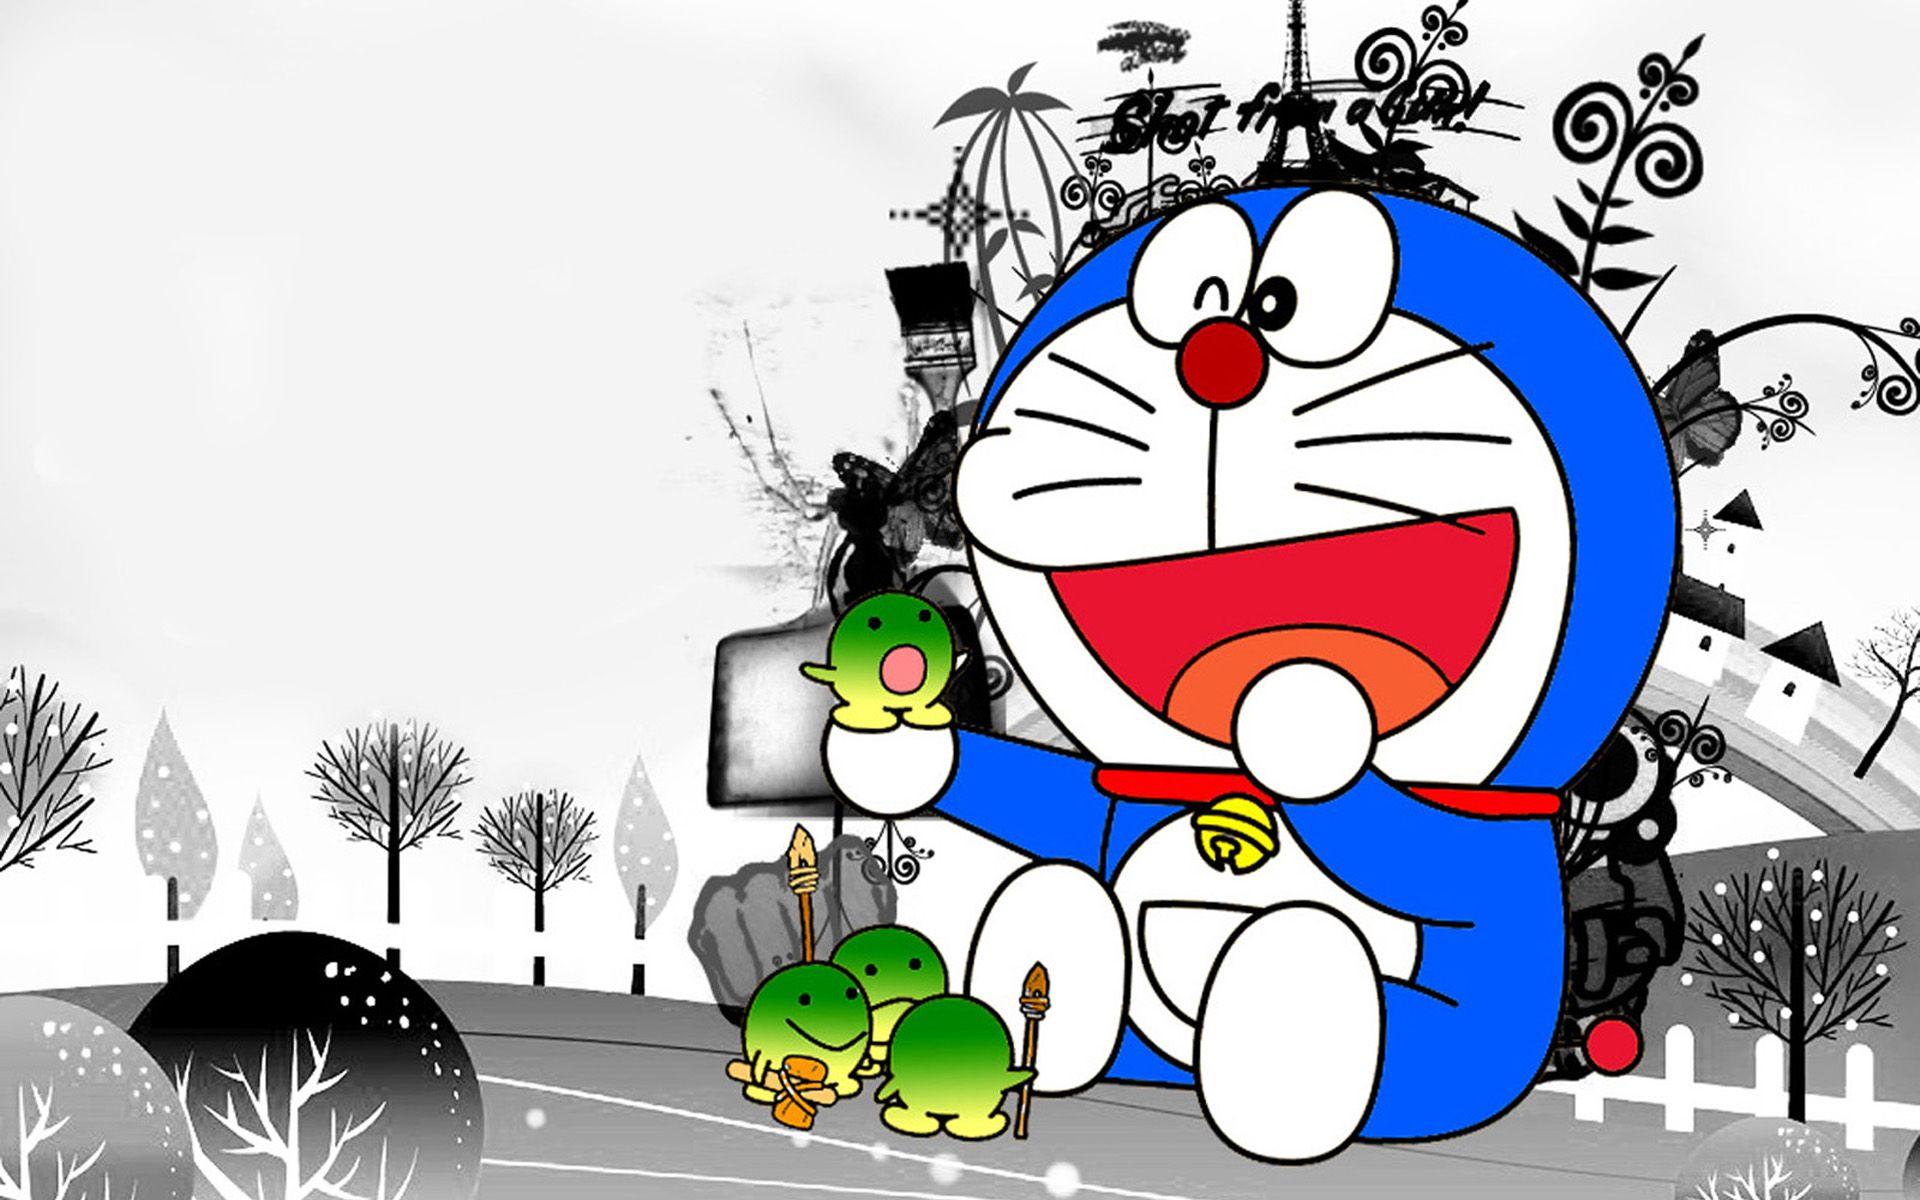 Hãy đón nhận những khoảnh khắc đầy cảm xúc với bộ sưu tập hình nền Doraemon chất lượng cao của chúng tôi. Với hình ảnh sống động, bộ sưu tập của chúng tôi sẽ khiến bạn như muốn đặt chân vào thế giới hoạt hình huyền thoại của Doraemon và những người bạn của mình!